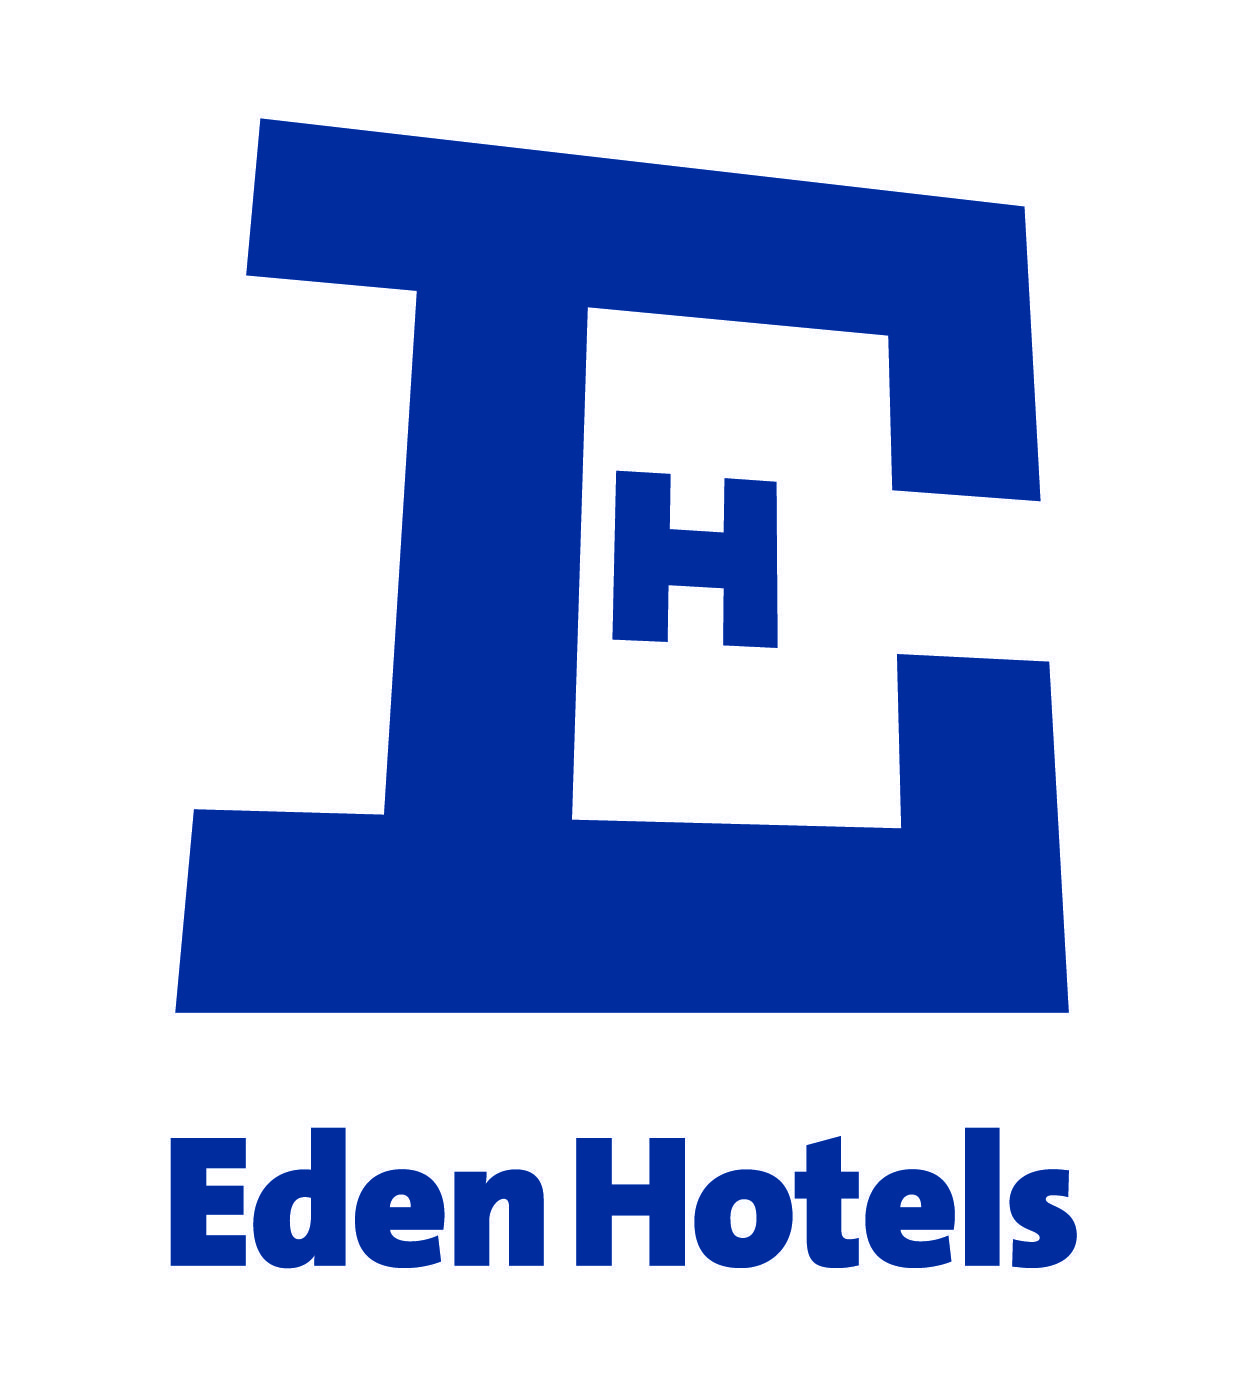 EDEN hotels